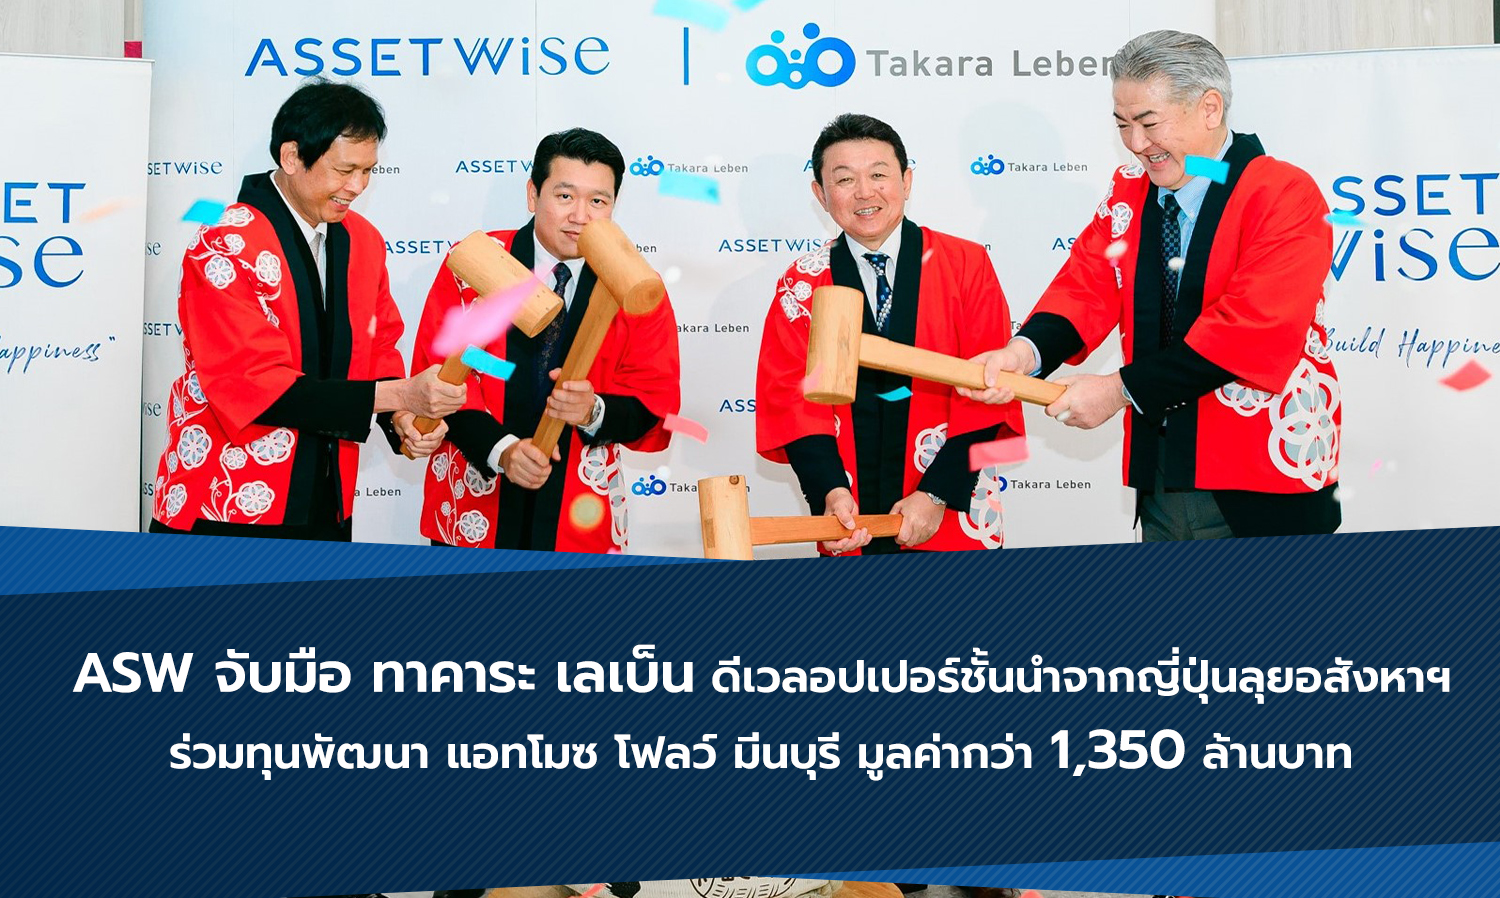 ASW จับมือ ทาคาระ เลเบ็น ดีเวลอปเปอร์ชั้นนำจากญี่ปุ่นลุยอสังหาฯ  ร่วมทุนพัฒนา แอทโมซ โฟลว์ มีนบุรี มูลค่ากว่า 1,350 ล้านบาท